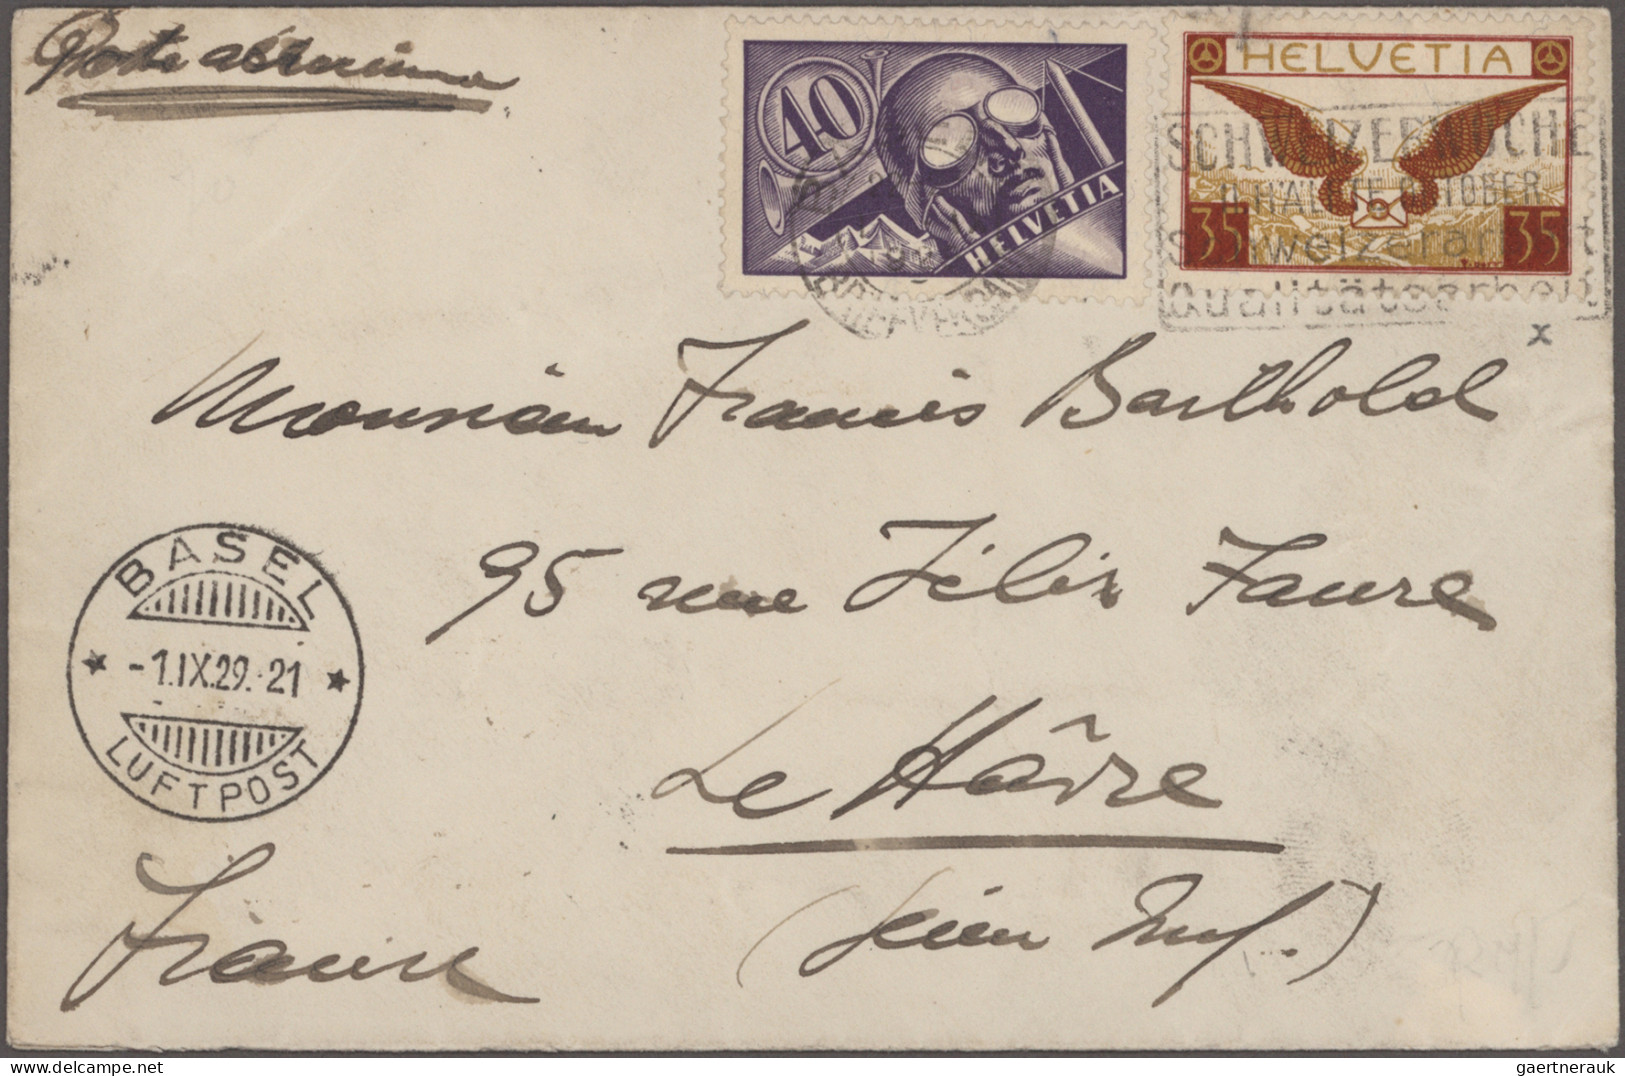 Schweiz: 1919-1960er Jahre - "FLUGPOST": Kollektion von rund 350 Briefen, Postka